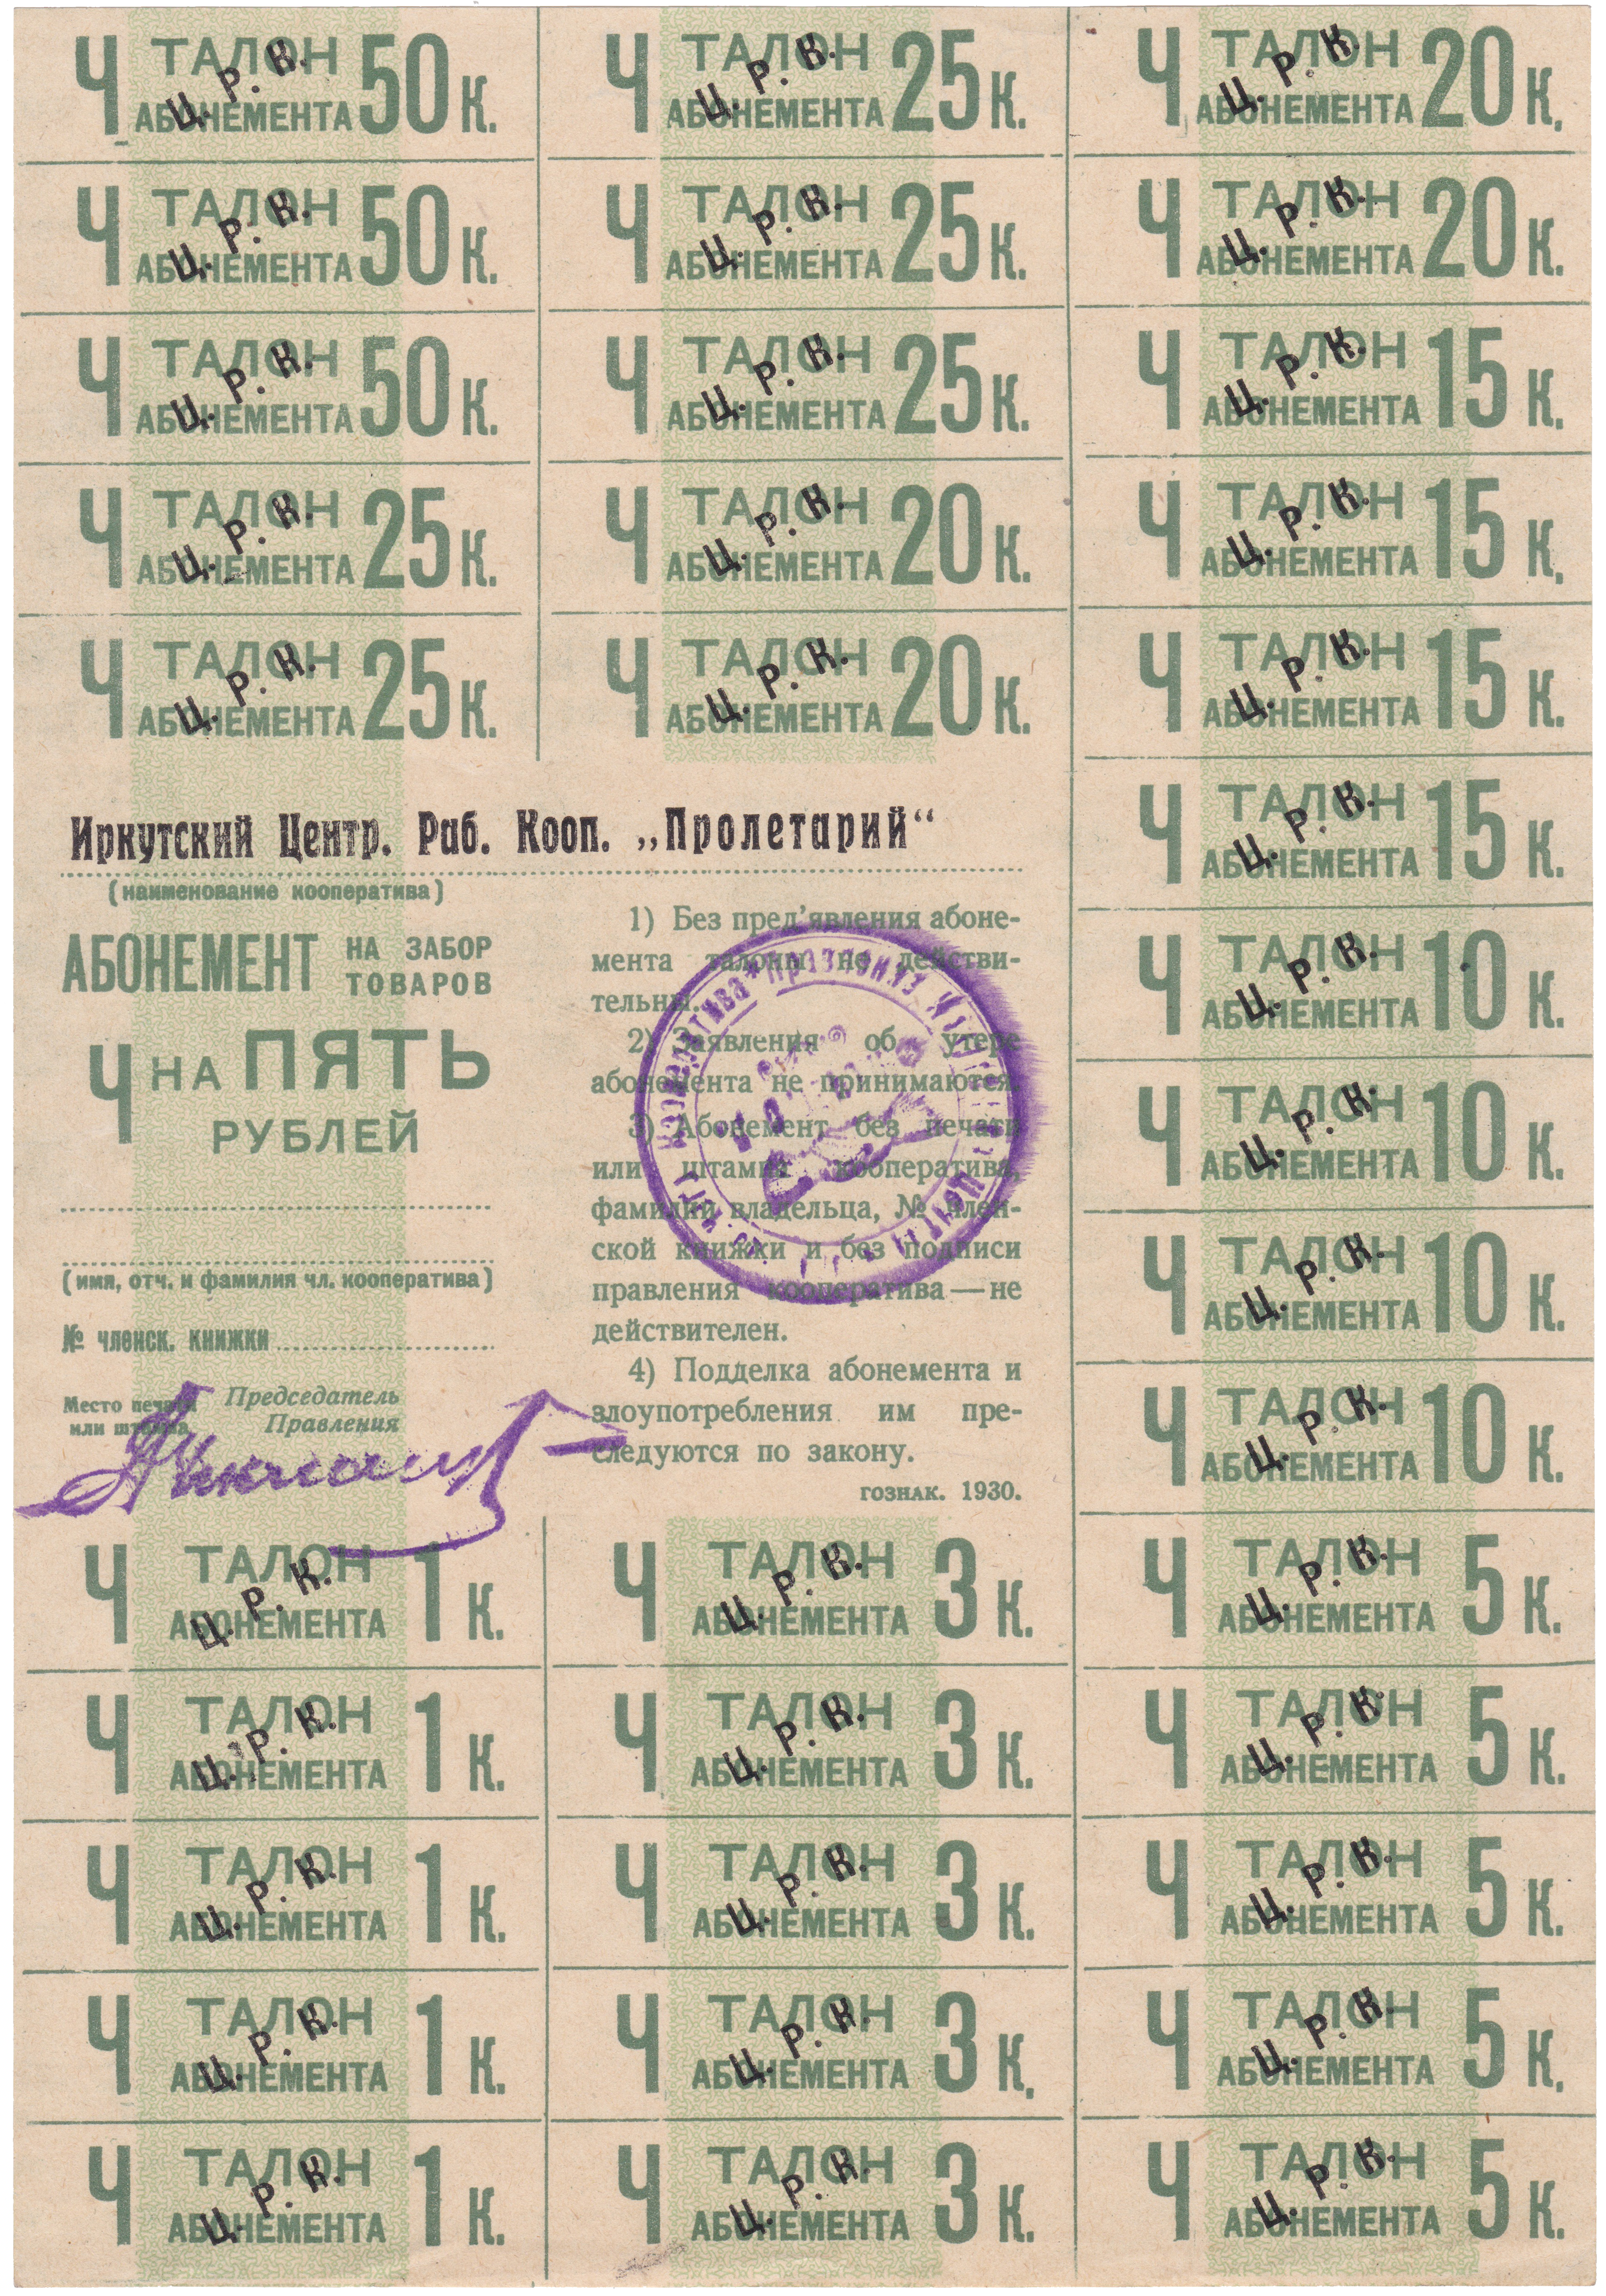 Абонемент на забор товаров талон абонемента 1 Копейка 1930 год. Иркутский ЦРК 